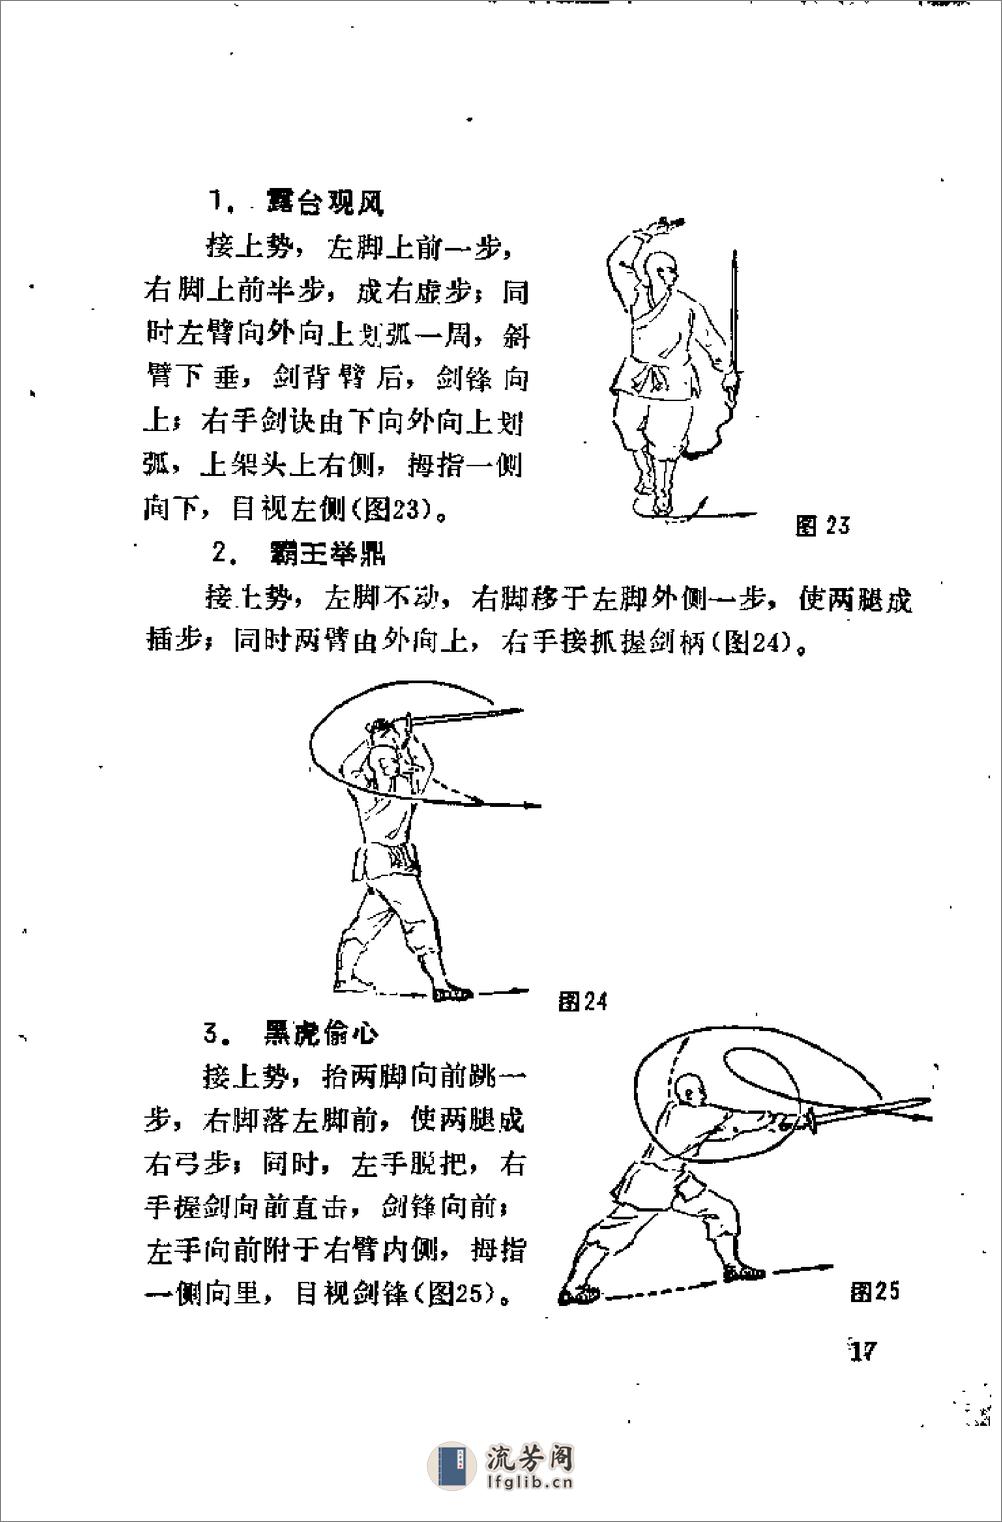 《少林剑法秘传》释德虔 - 第20页预览图